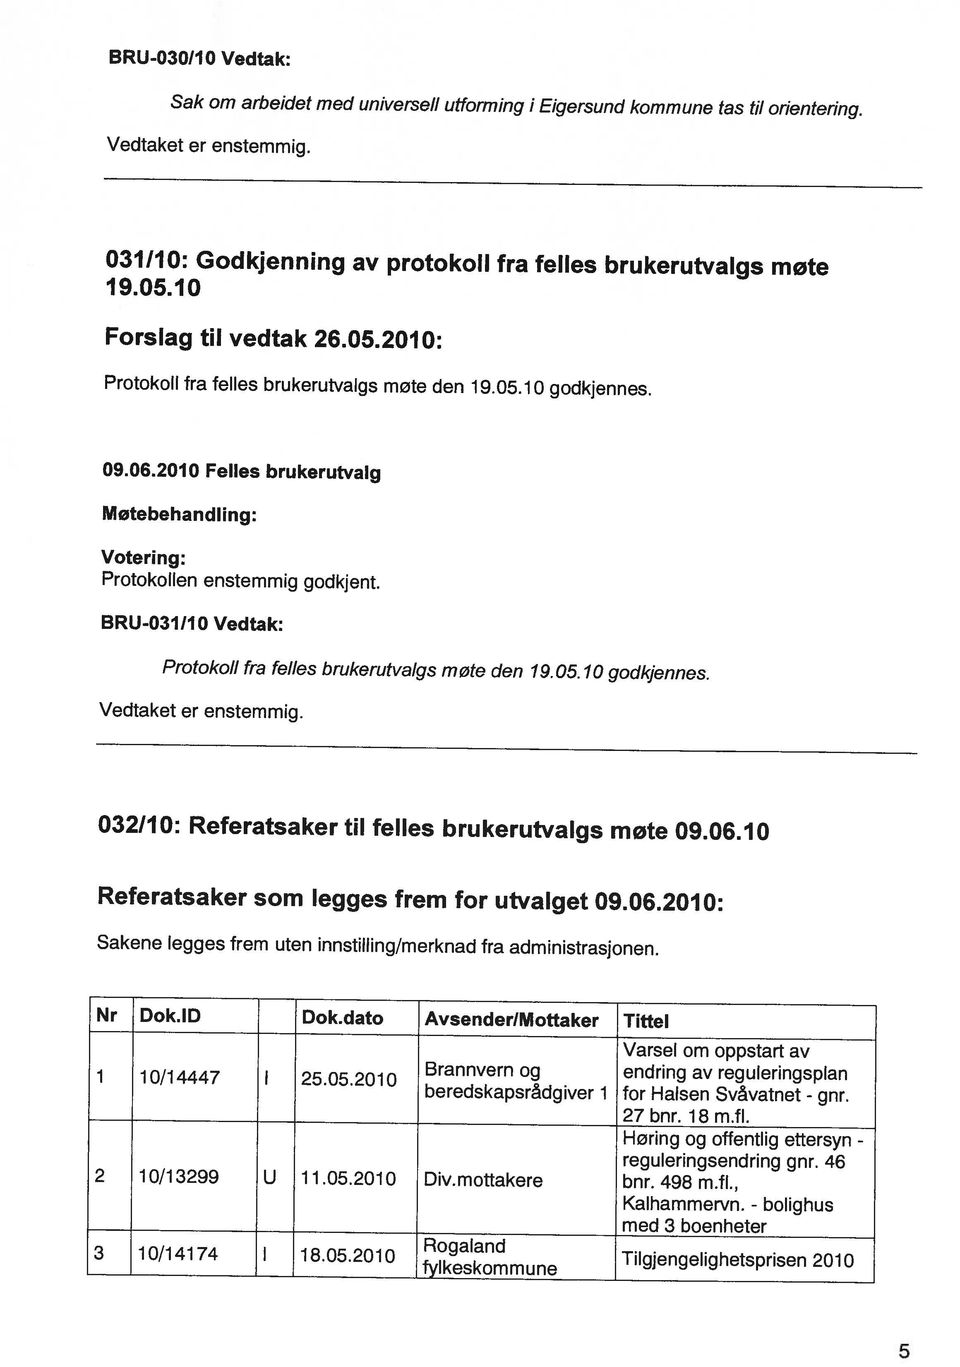 46 Tilgjengelighetsprisen 2010 Varsel 27 bnr. 18 m.fl. om oppstart av Kalhammervn. - med 3 boenheter beredskapsrådgiver 1 for Halsen Svåvatnet - gnr.